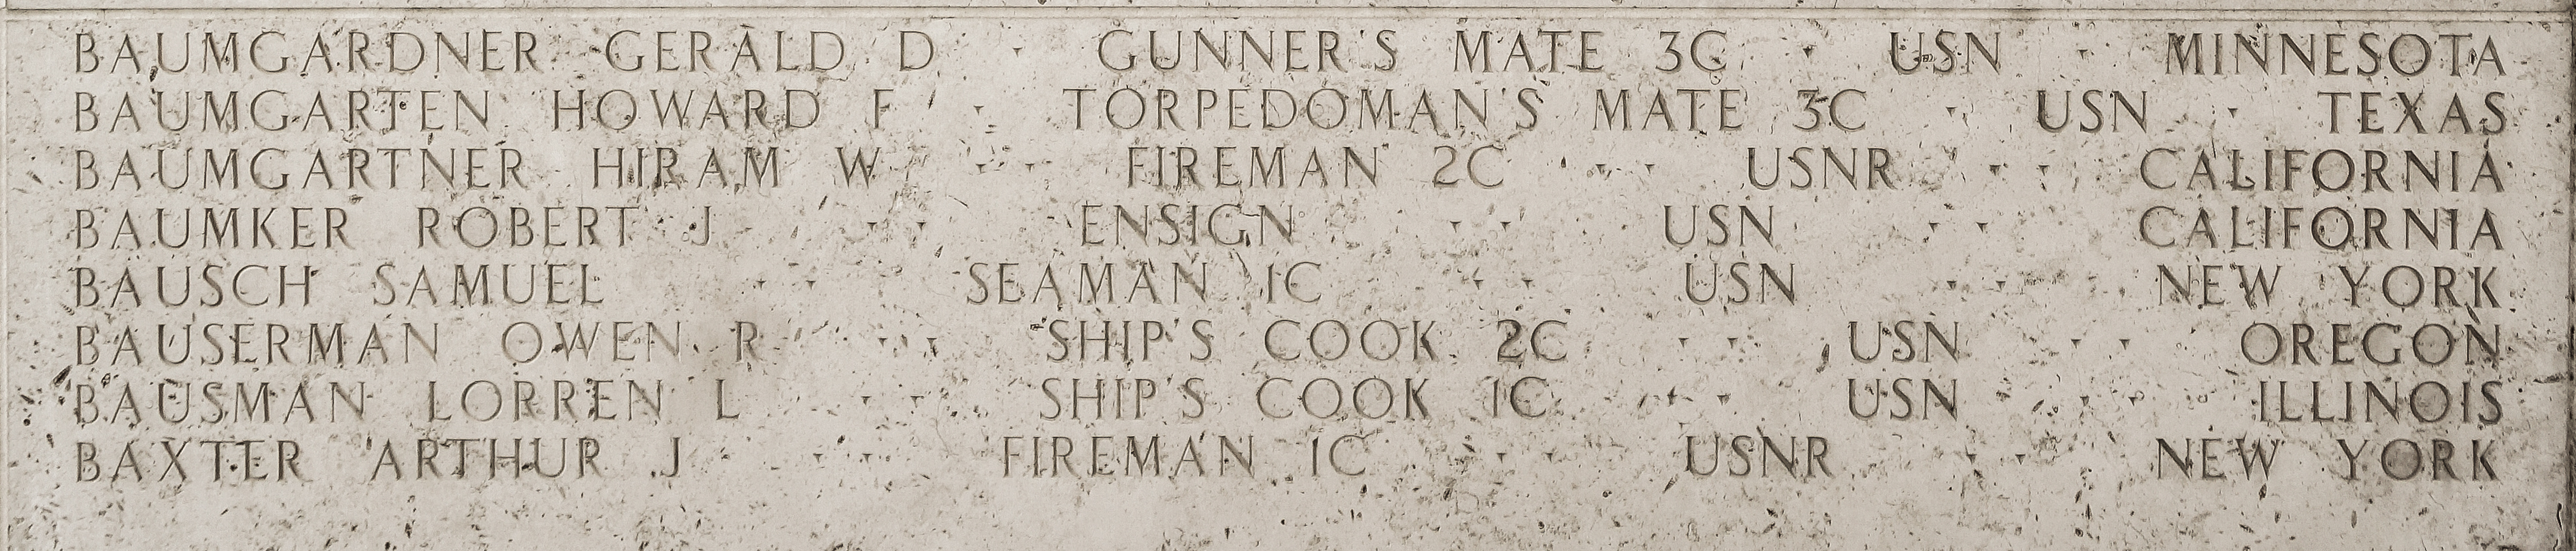 Owen R. Bauserman, Ship's Cook Second Class